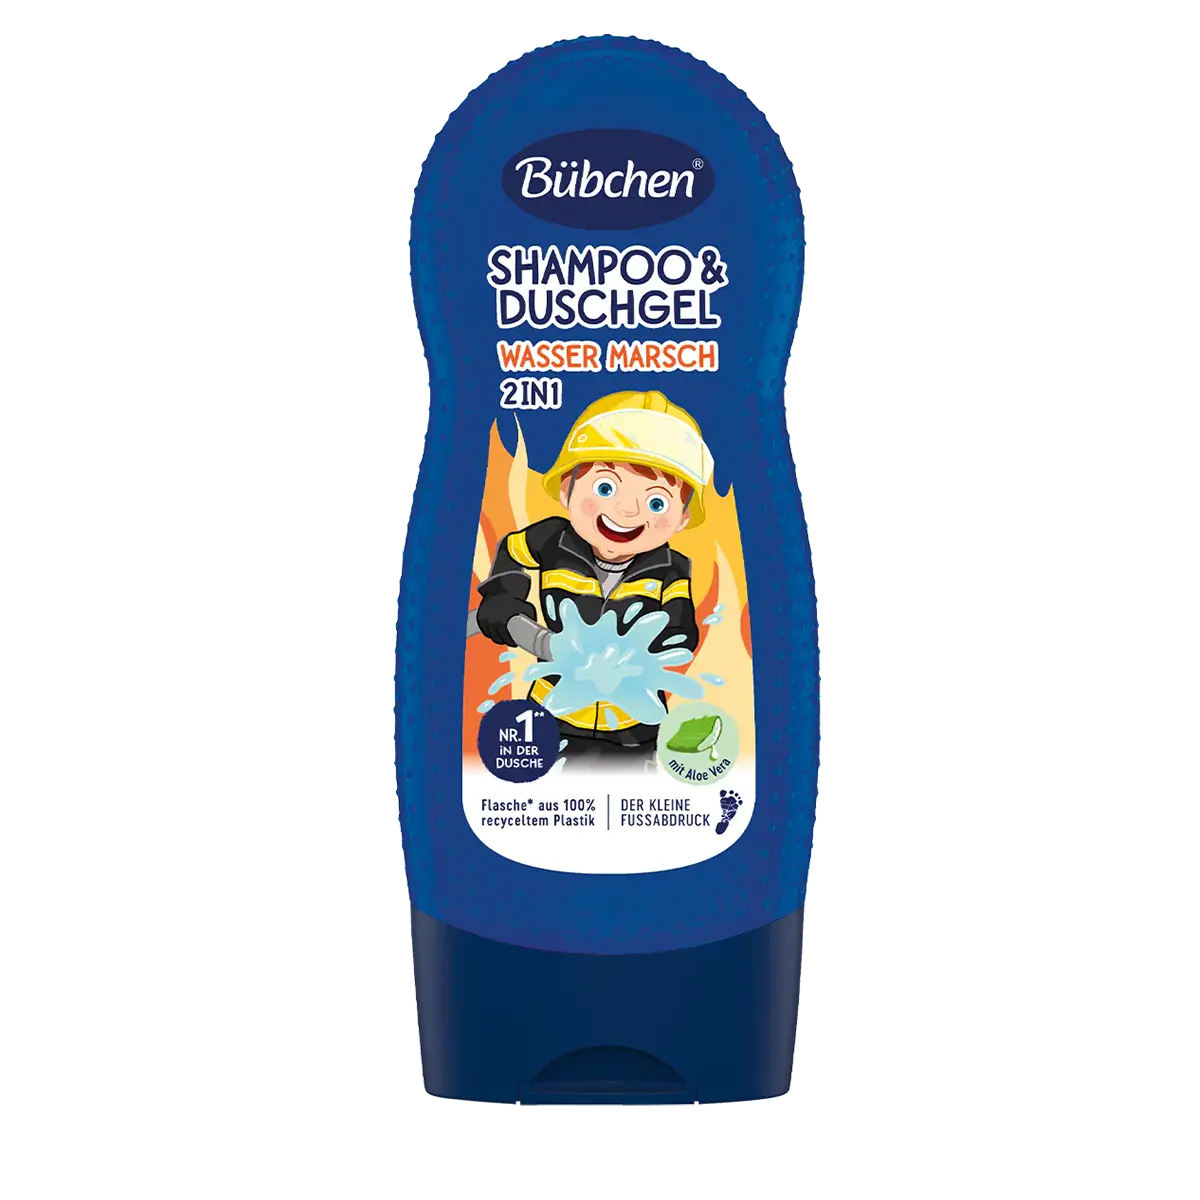 Kids Shampoo & Shower Gel 'Wasser Marsch', 230 ml